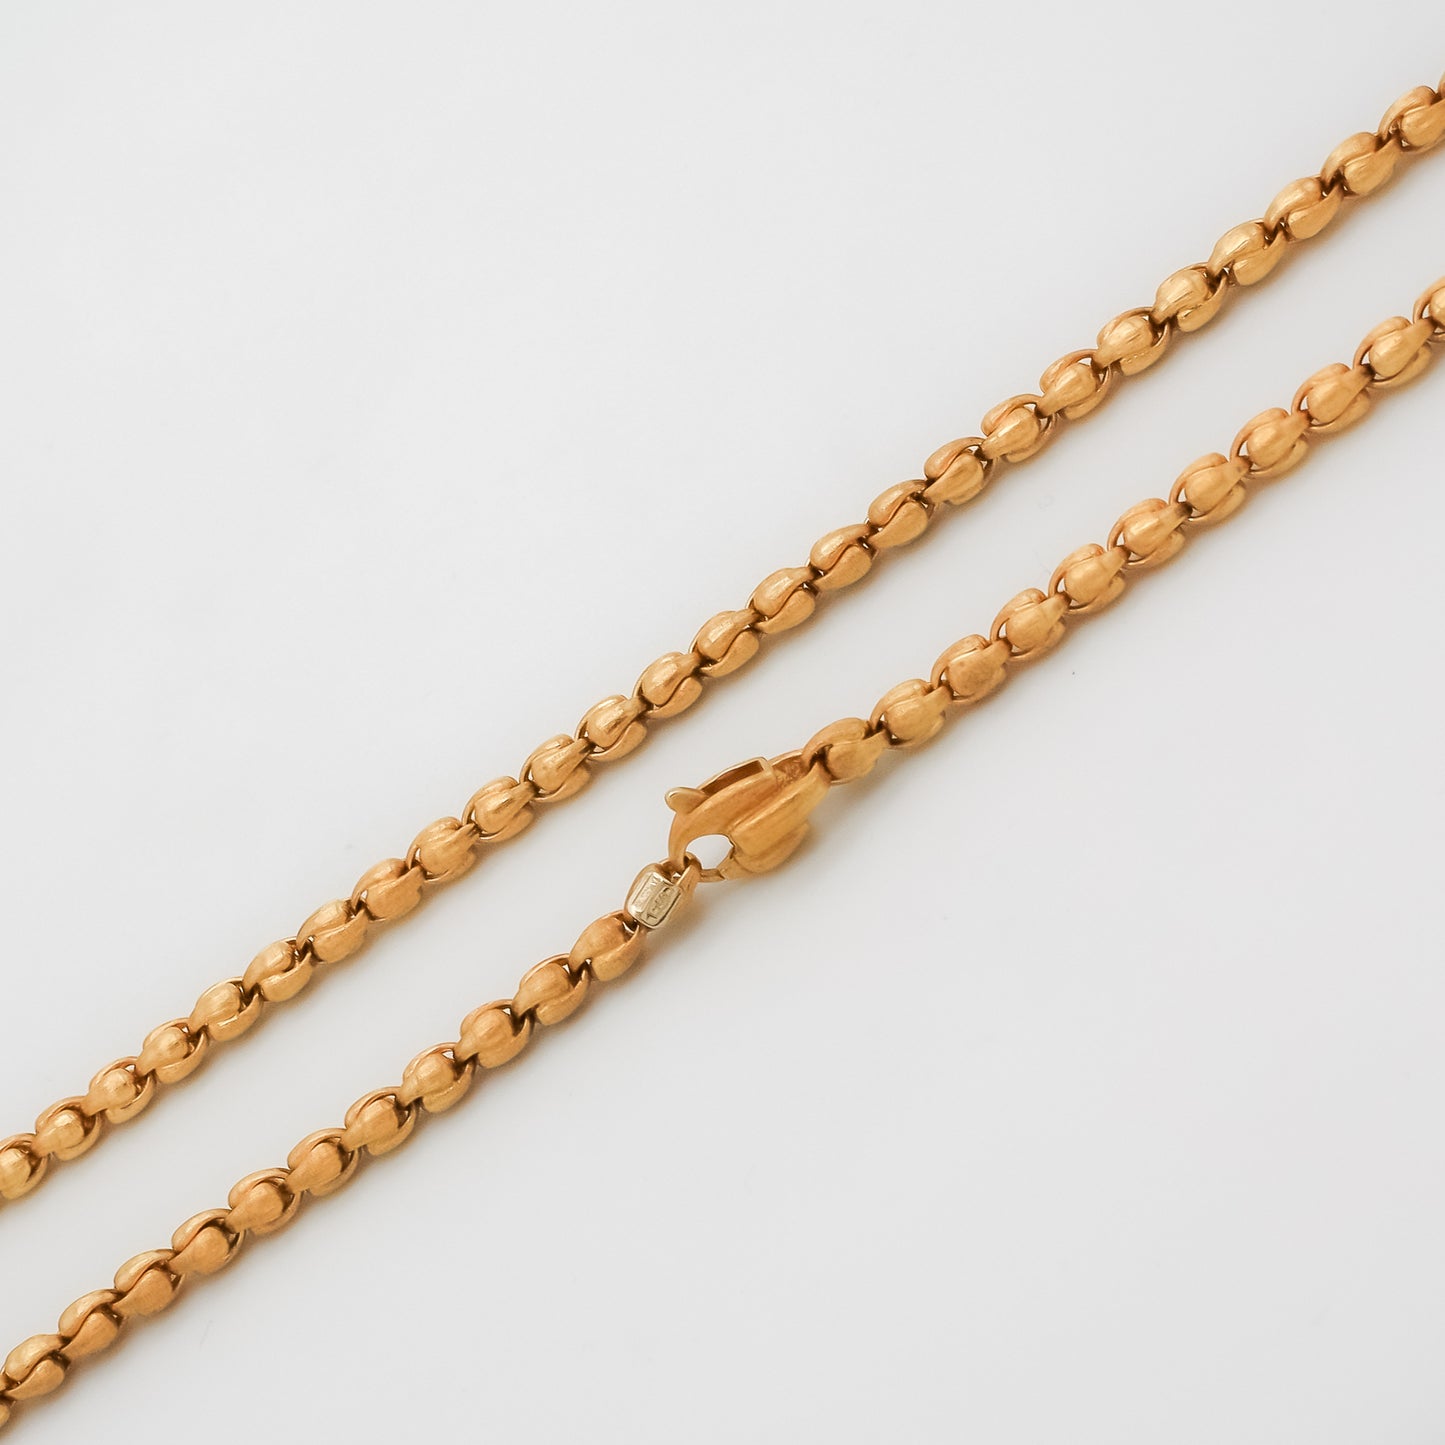 Women’s Fancy Chain Necklace In 18K Yellow Gold